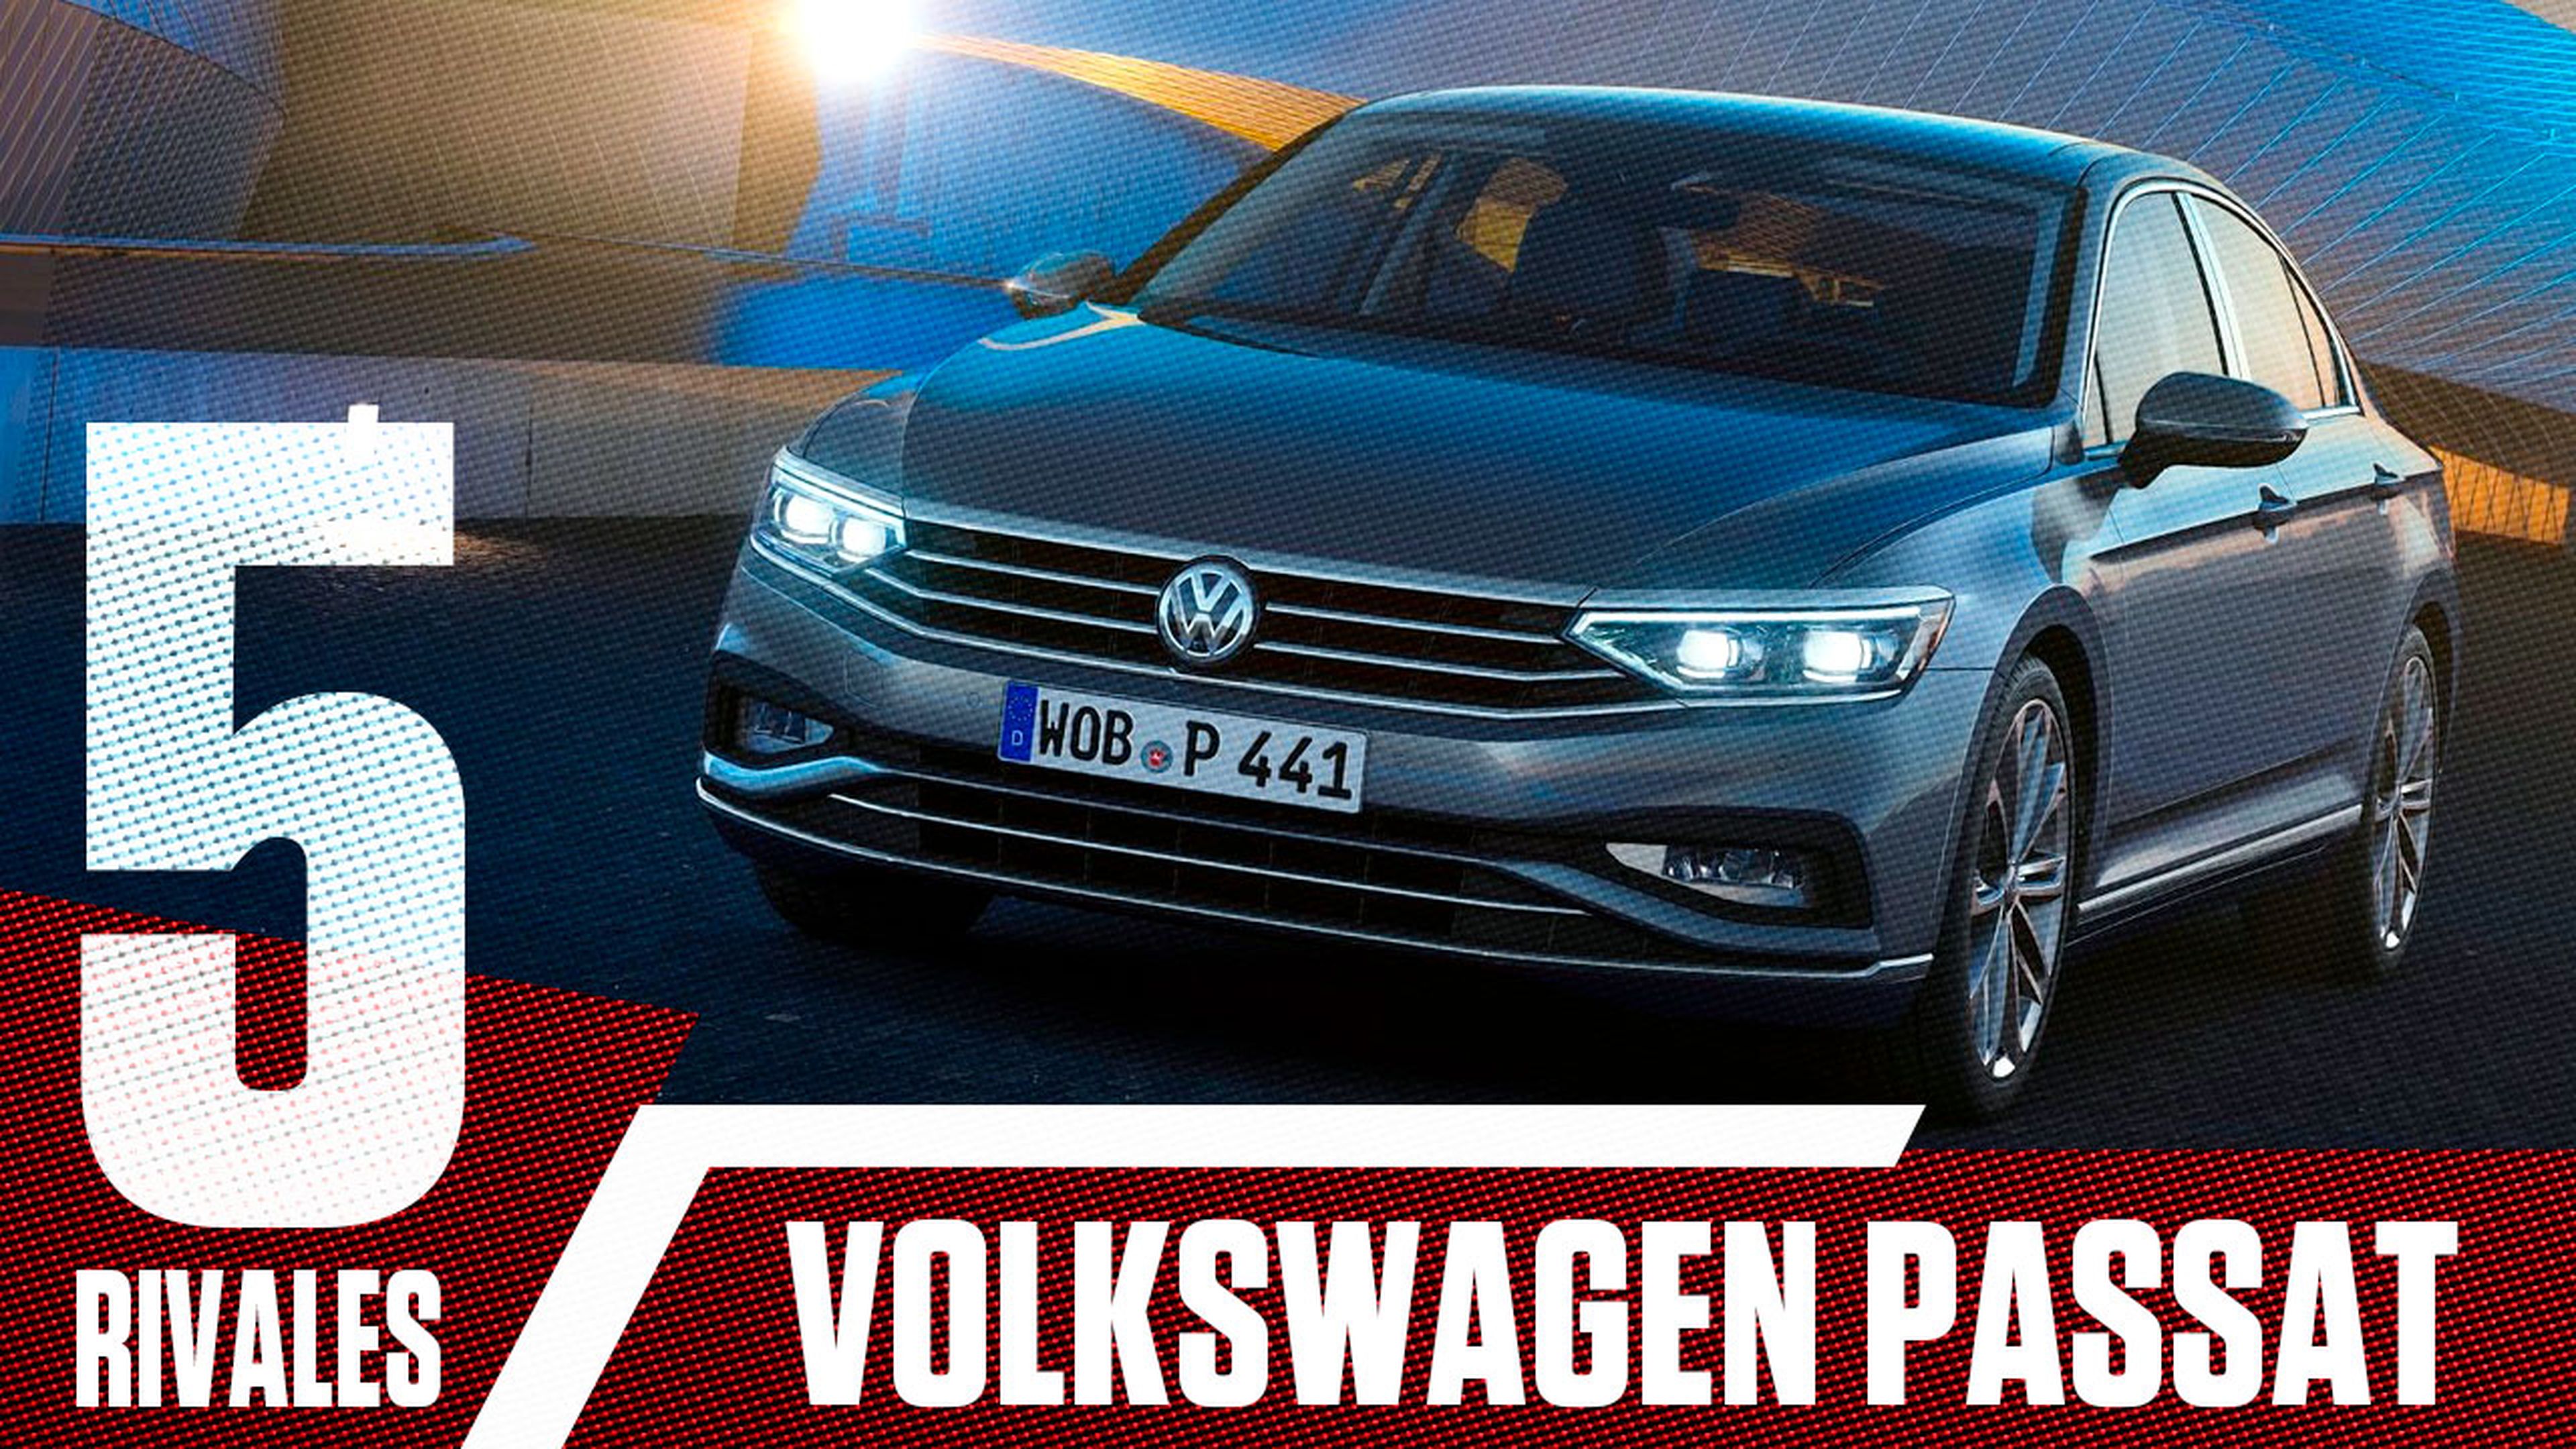 VÍDEO: Los 5 rivales más duros del Volkswagen Passat